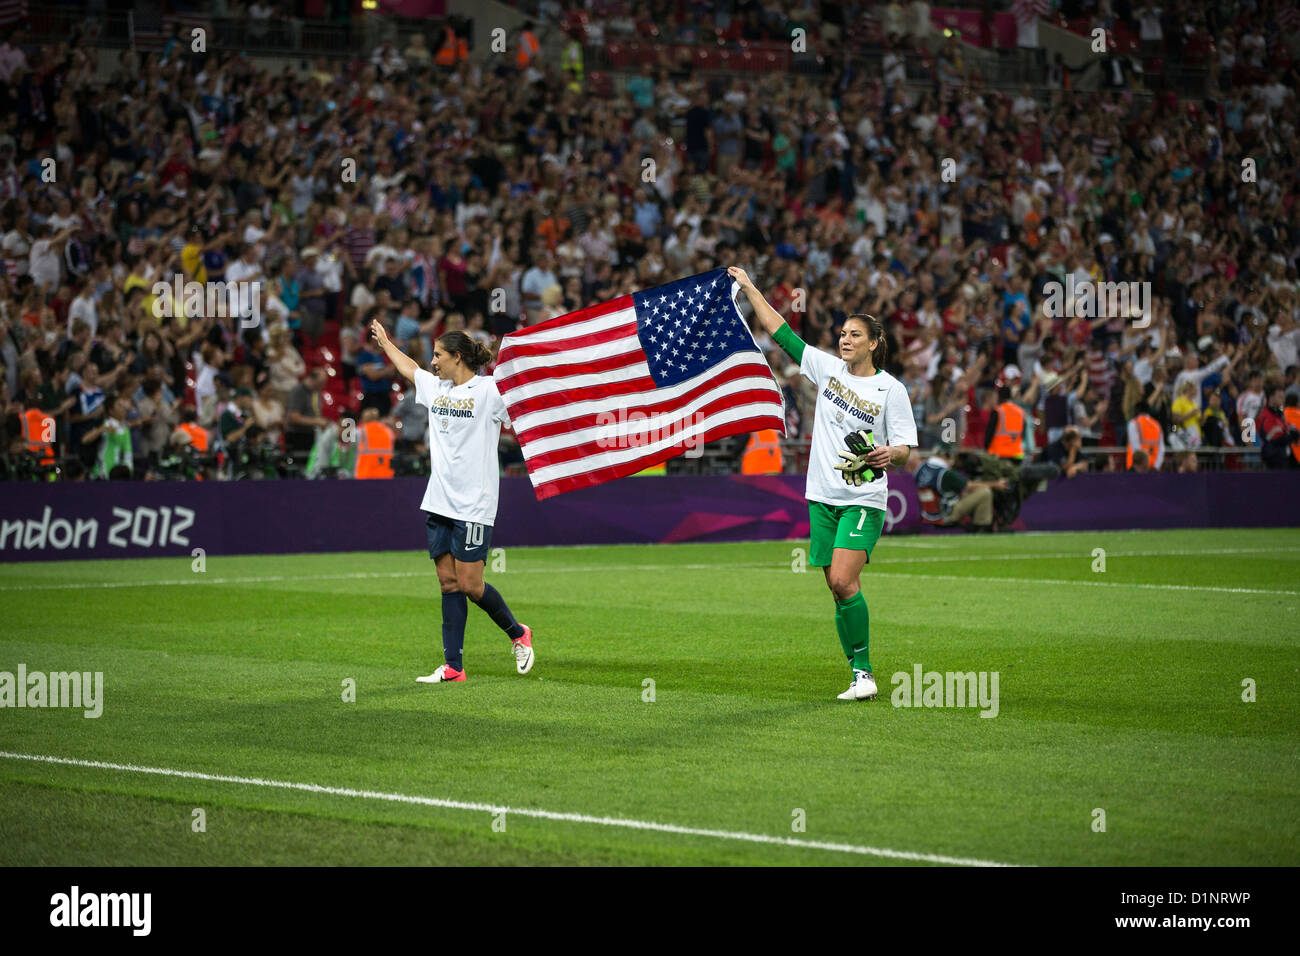 Carli Lloyd-10, Hope Solo-1-USA remporte l'or sur le Japon en femmes Football (soccer) aux Jeux Olympiques d'été, Londres 2012 Banque D'Images